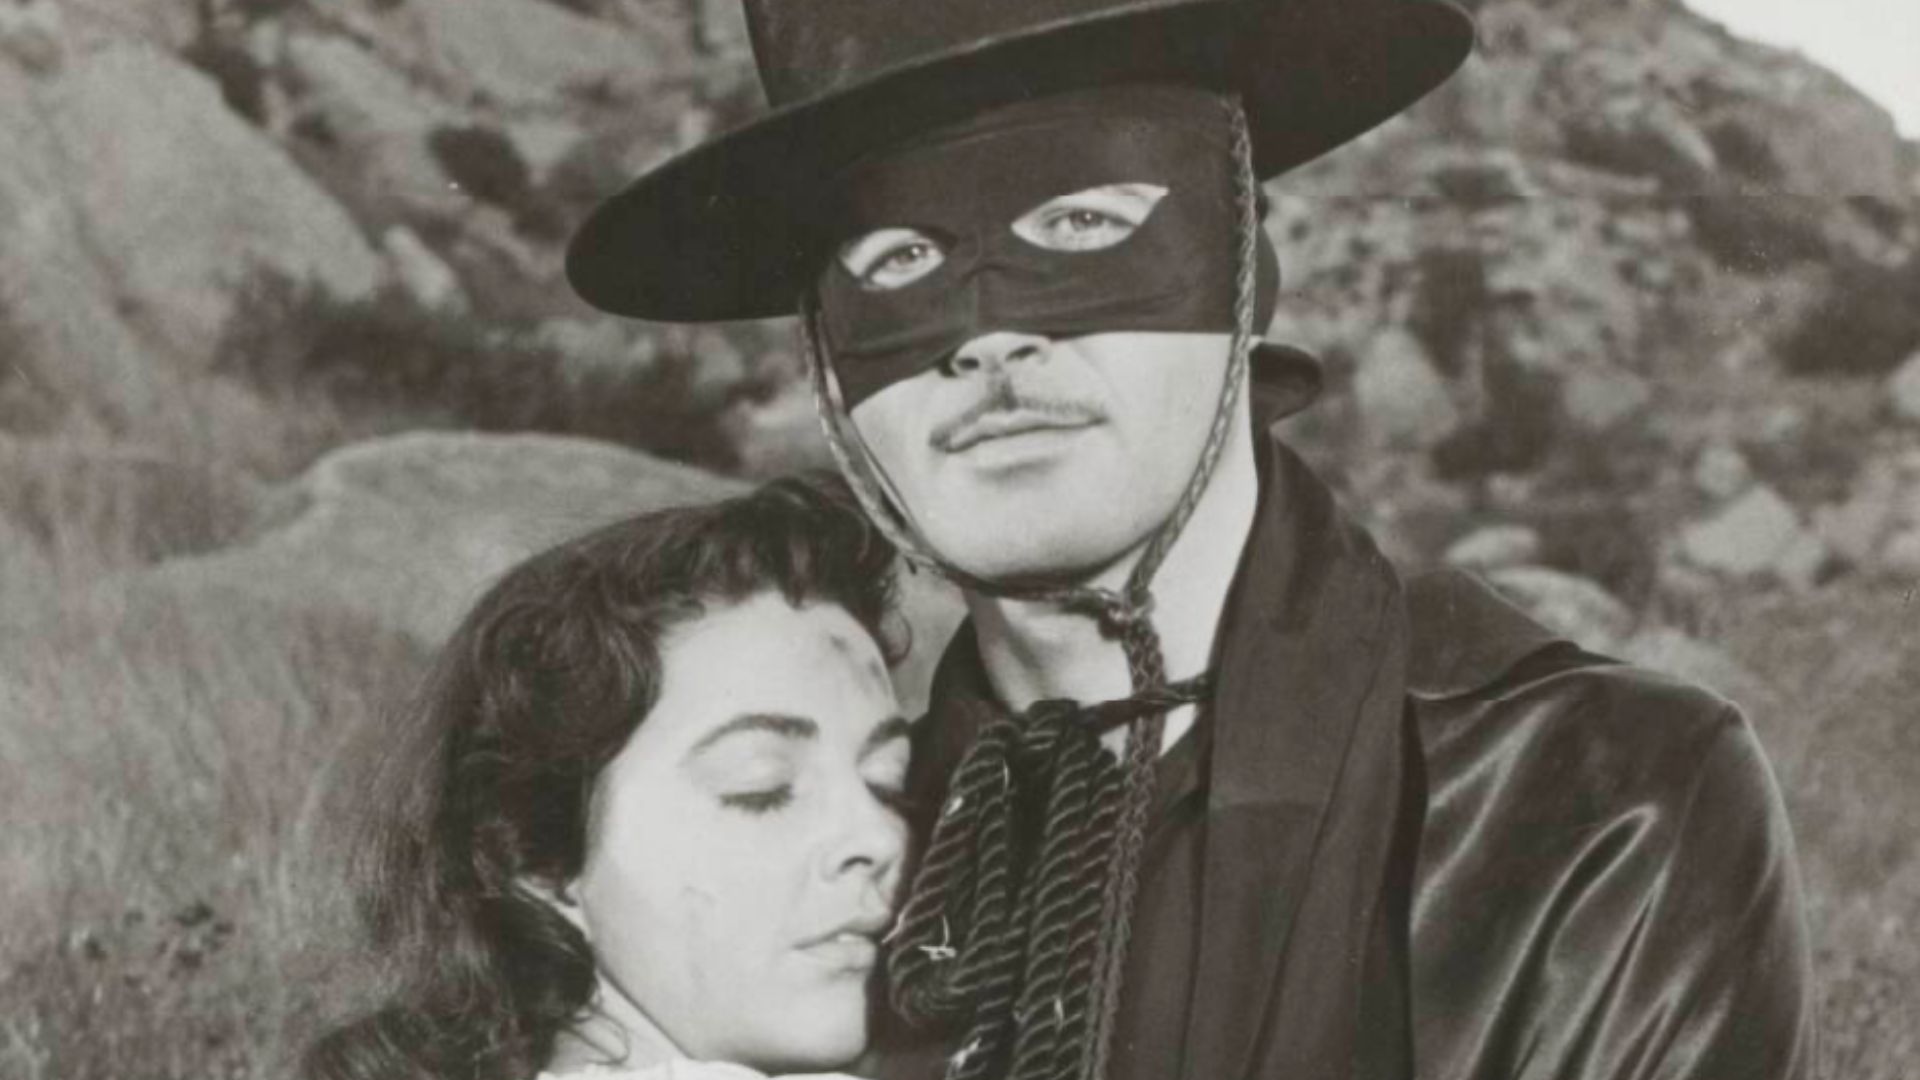 Zorro, keek jij vroeger ook naar de gemaskerde held?. Uitgelichte afbeelding